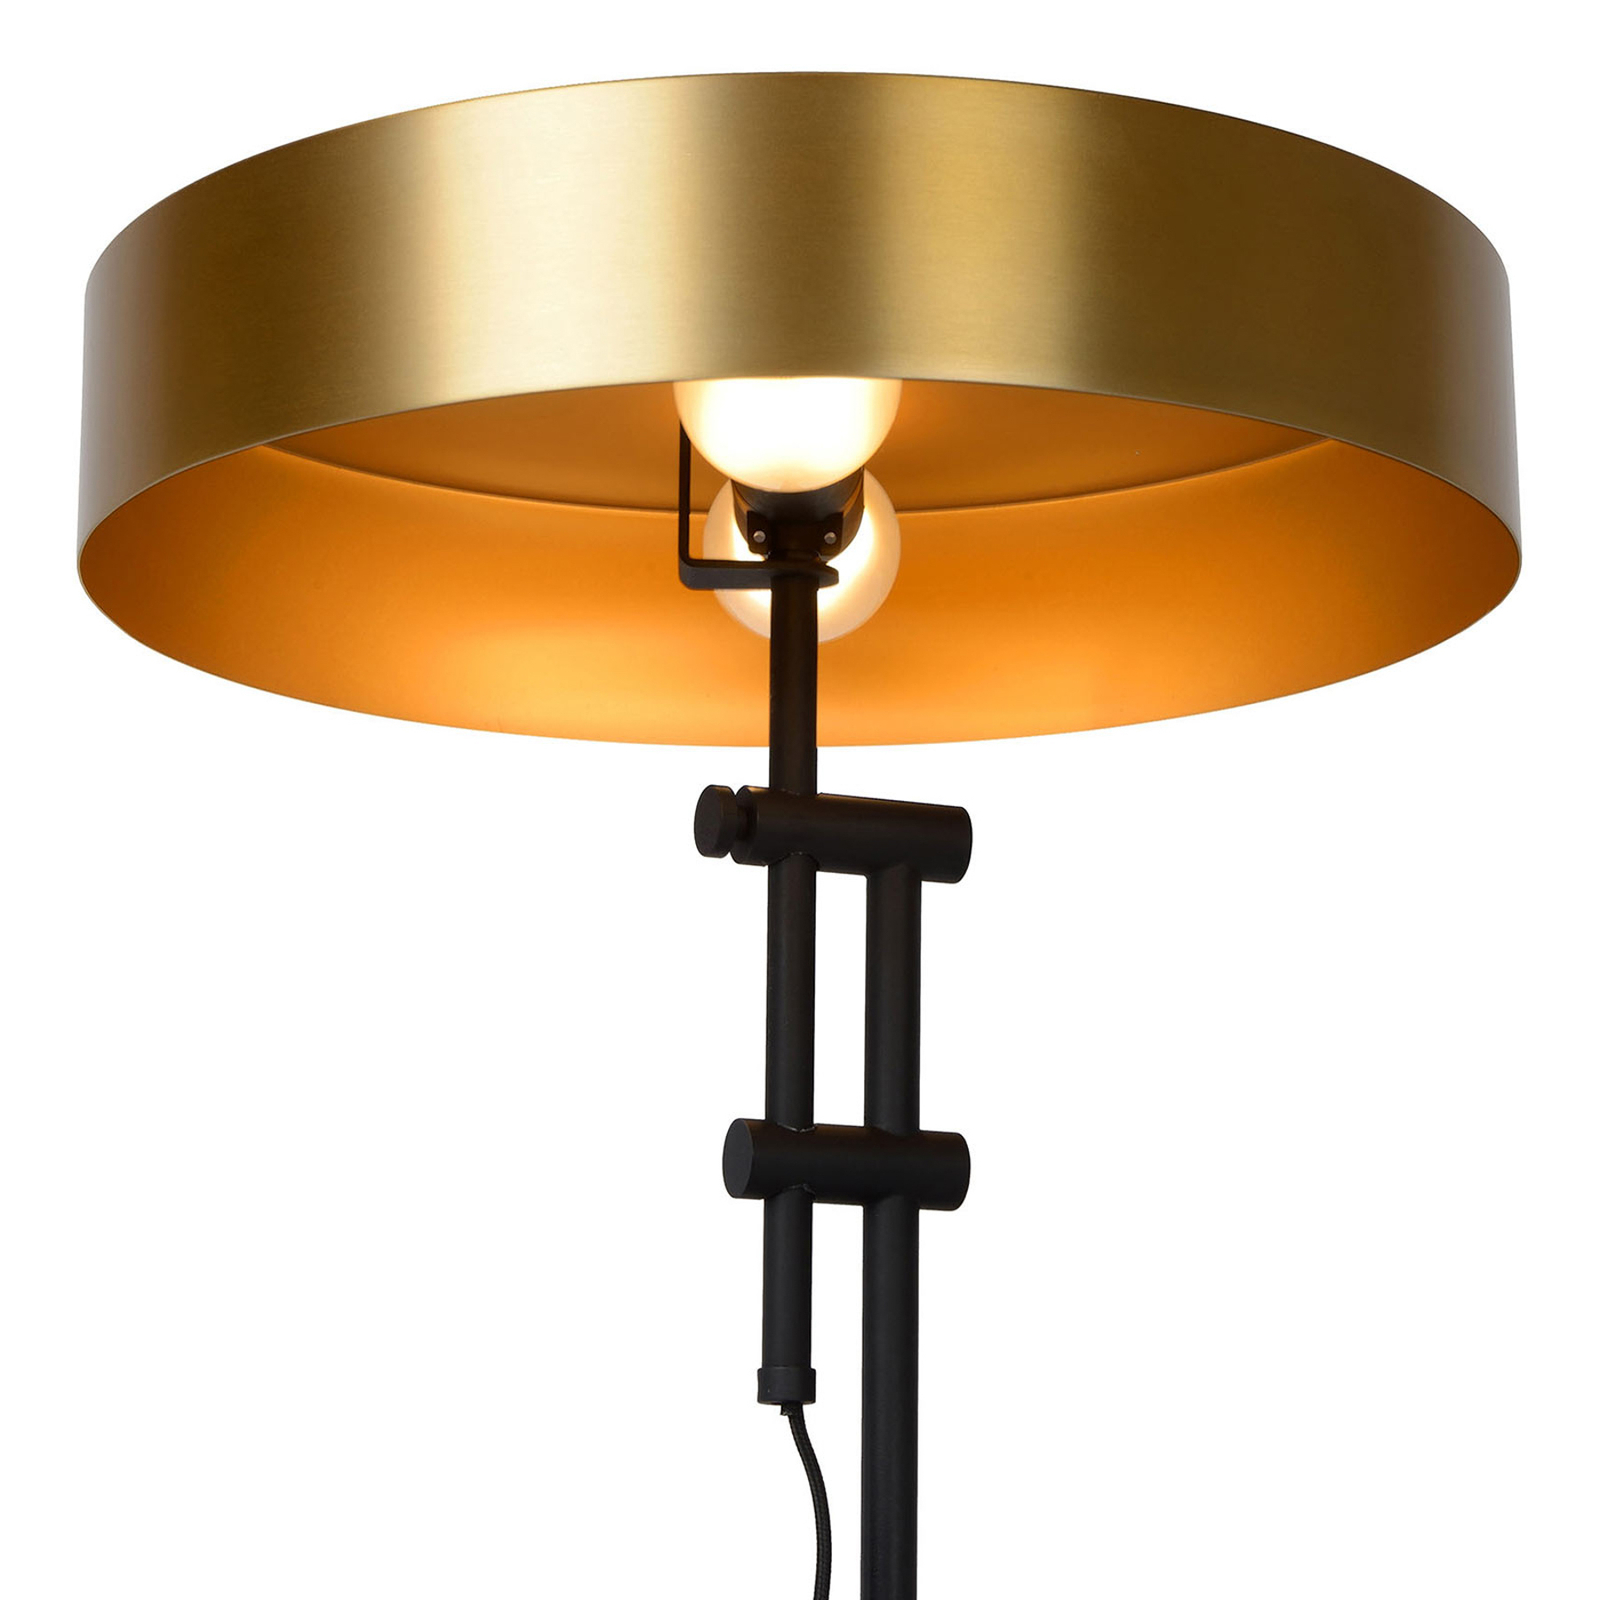 Giada stolna lampa s ravnim sjenilom u zlatnoj boji